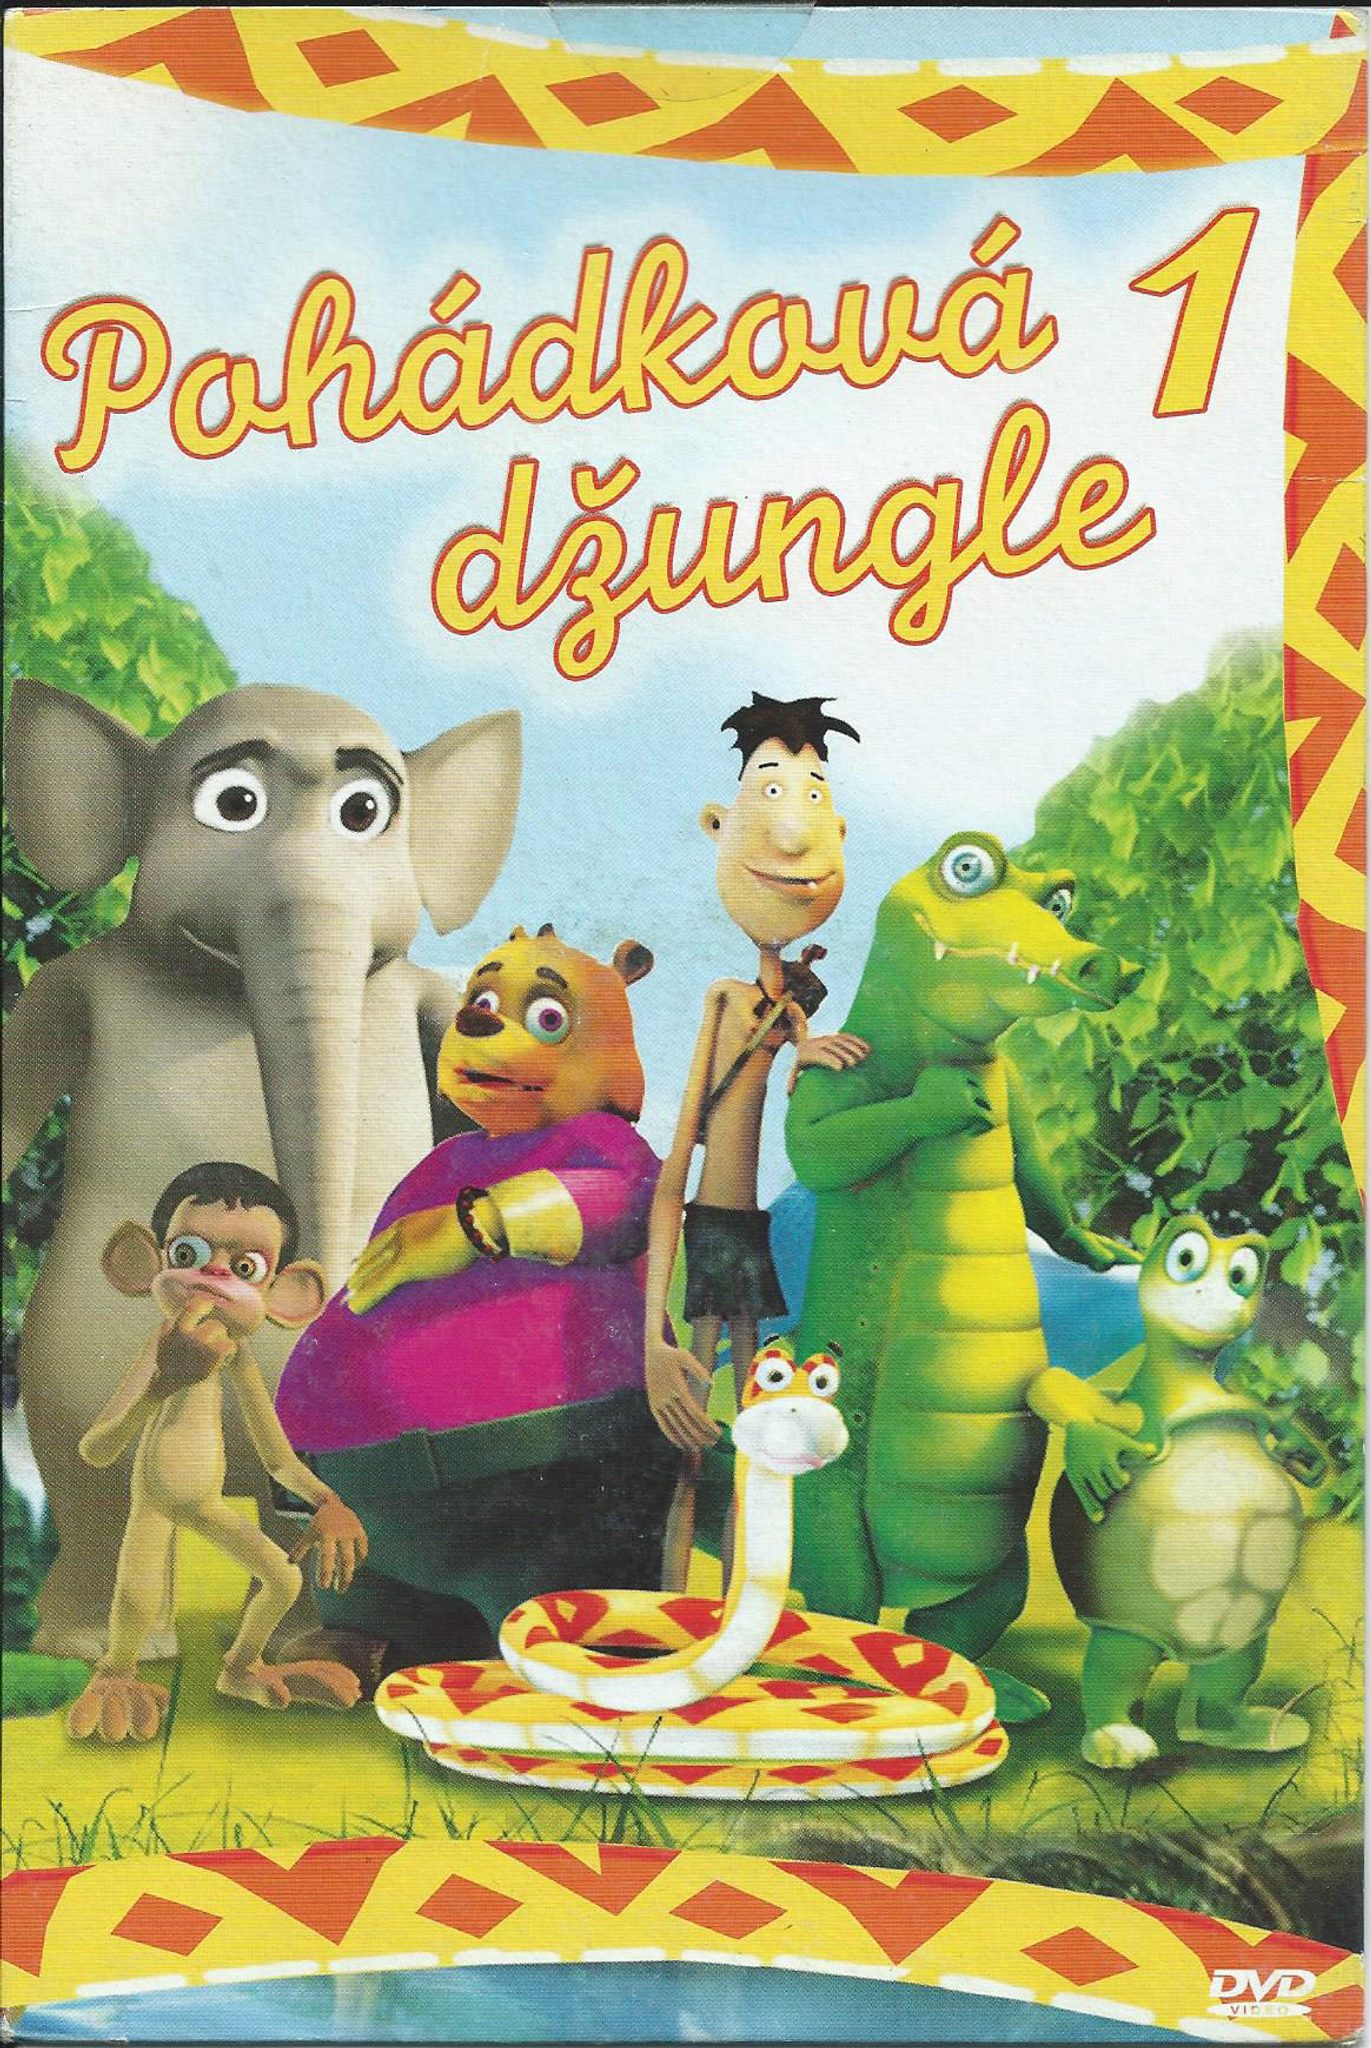 DVD Pohdkov dungle 1